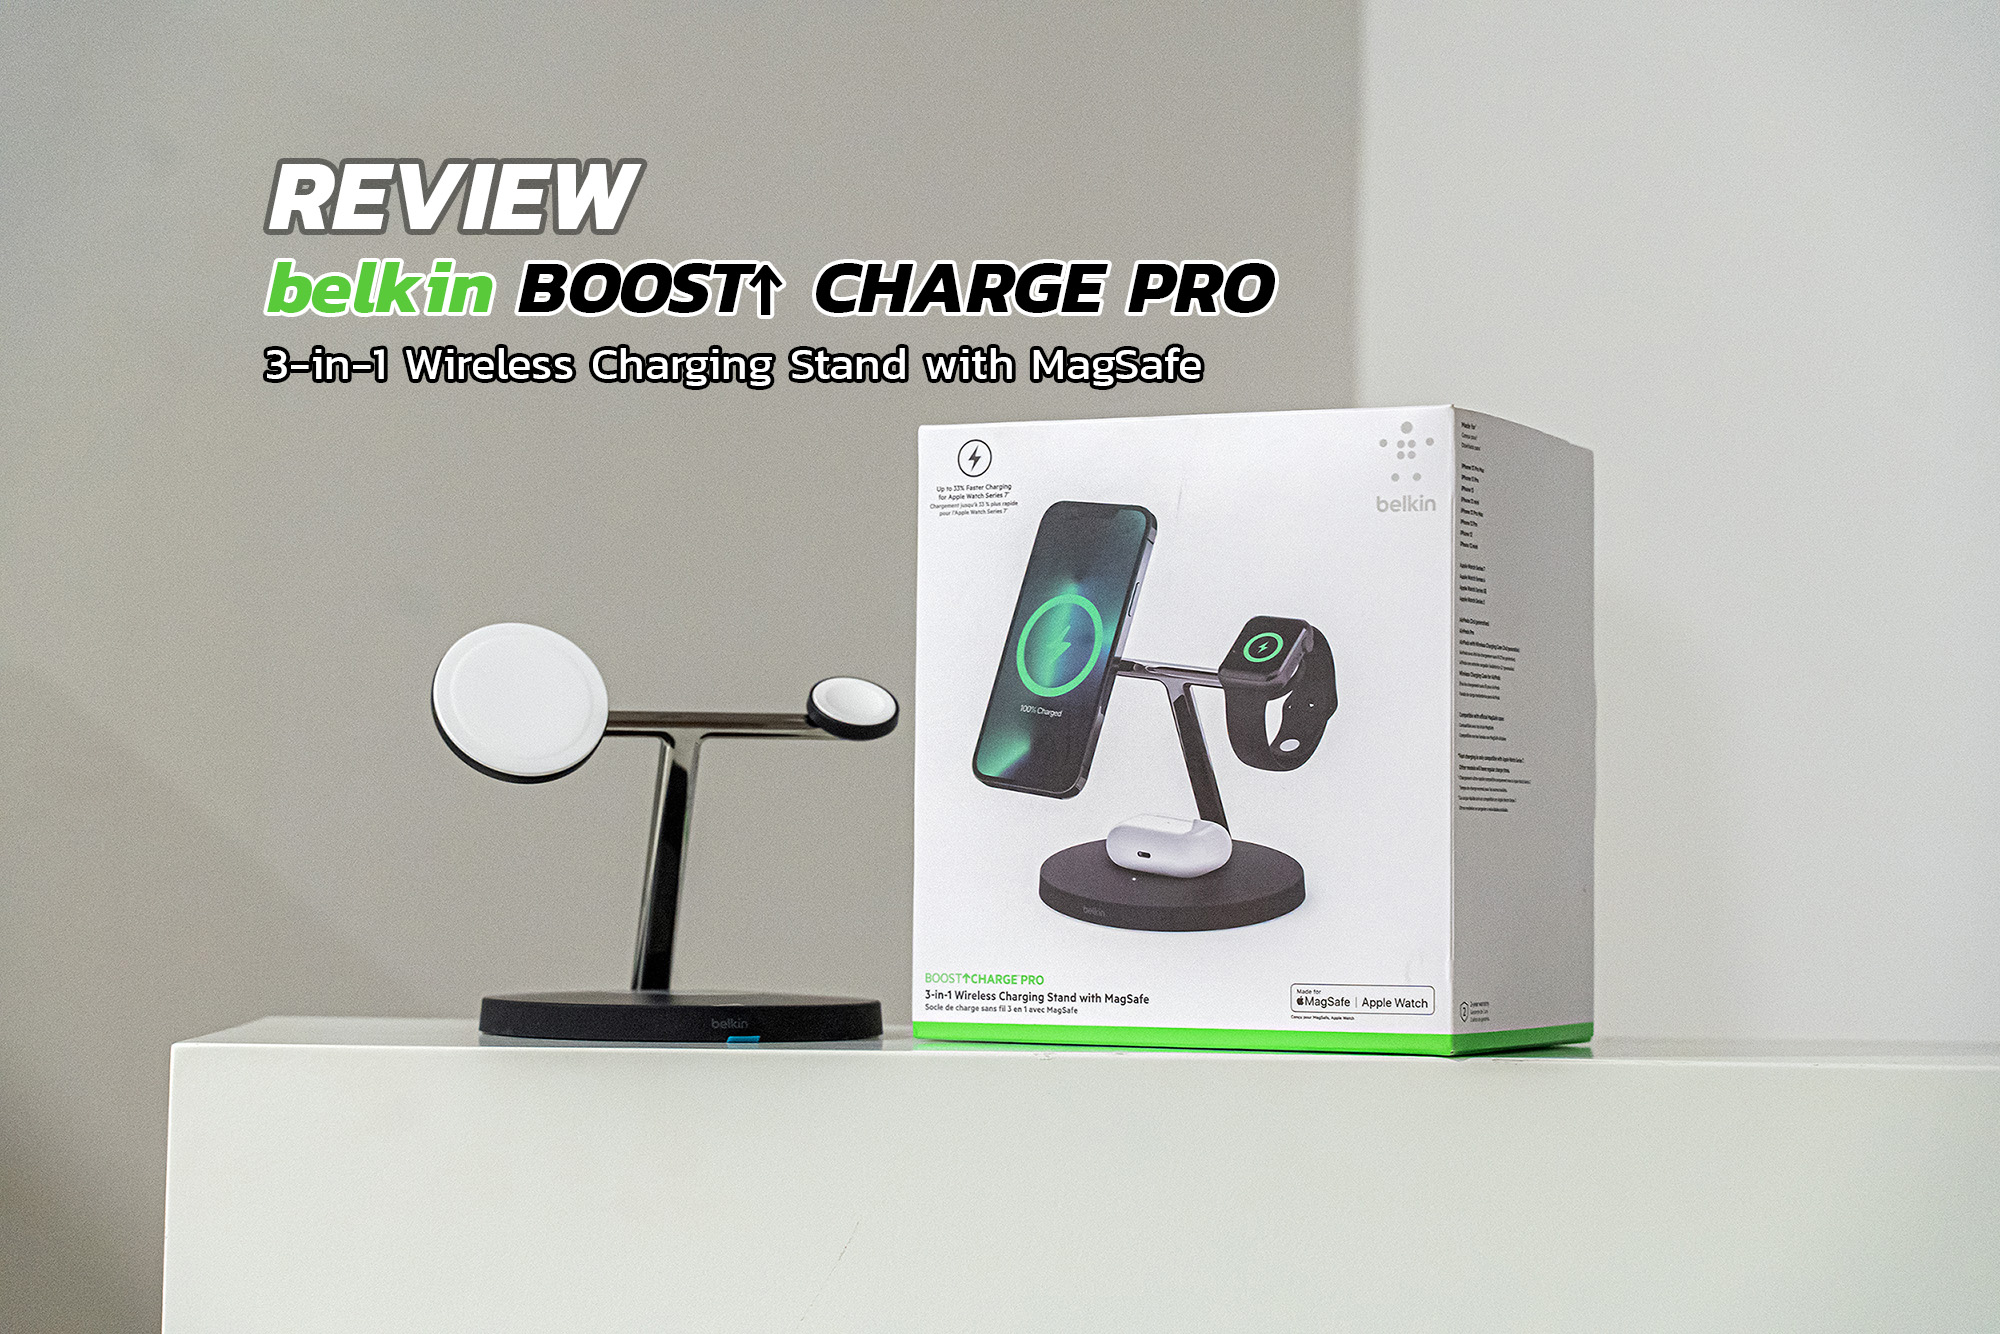 รีวิว Belkin Boost Charge Pro 3-in-1 Wireless Charging Stand with MagSafe แท่นชาร์จไร้สายอเนกประสงค์แบบ 3-in-1 